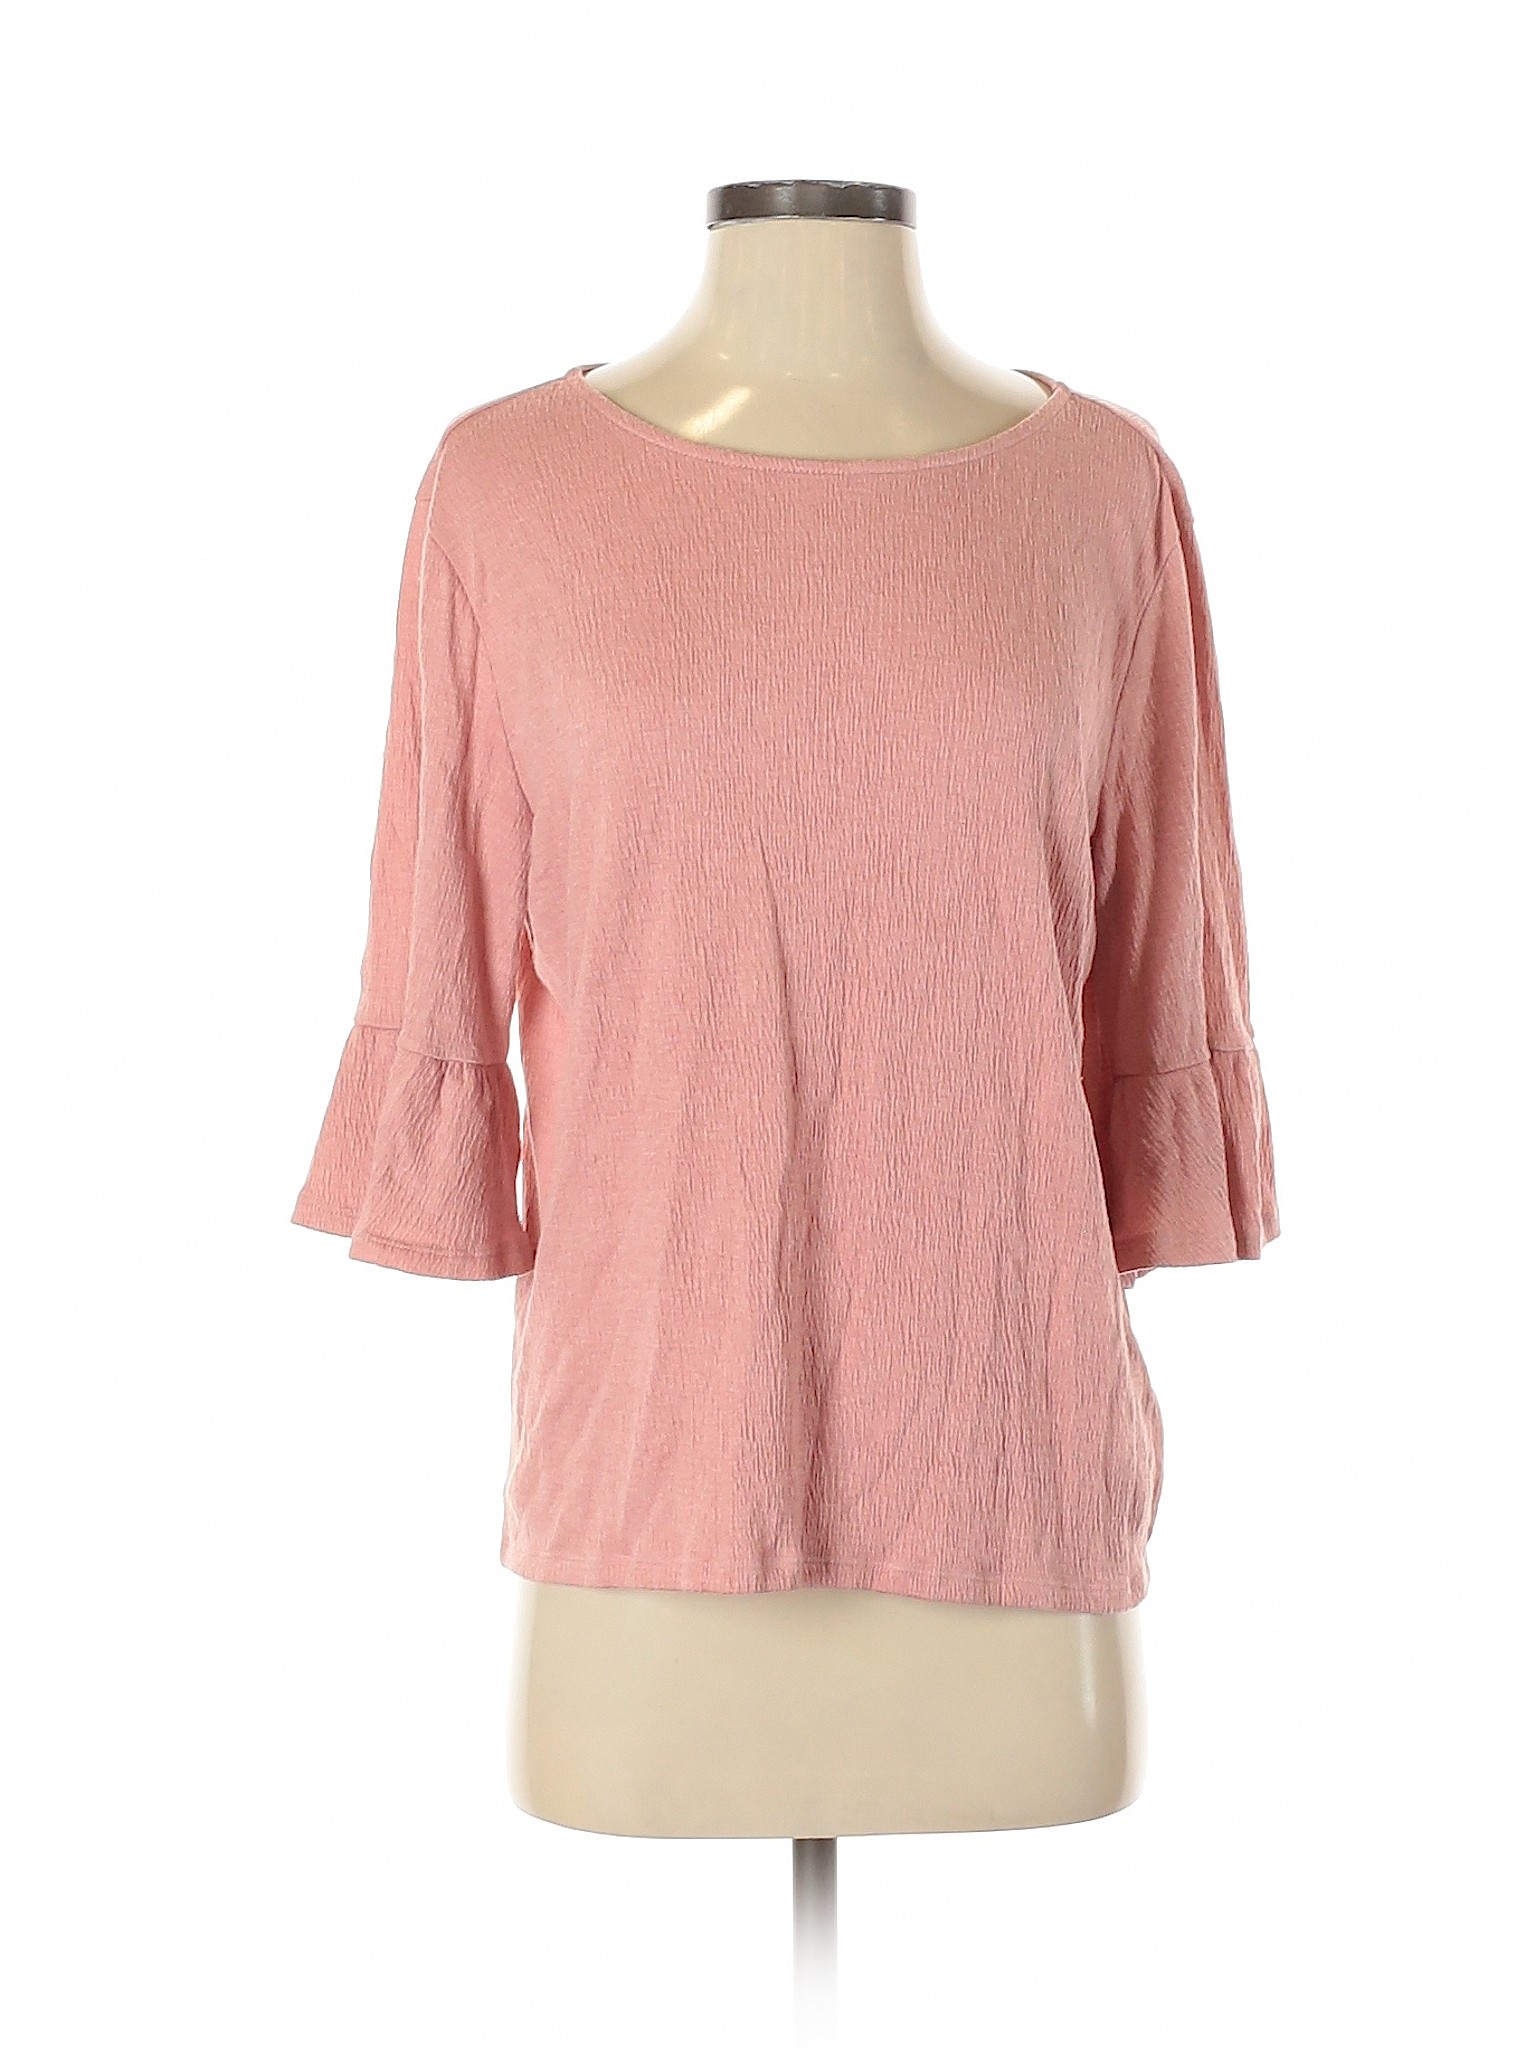 Old Navy Women Pink 3/4 Sleeve Top S | eBay